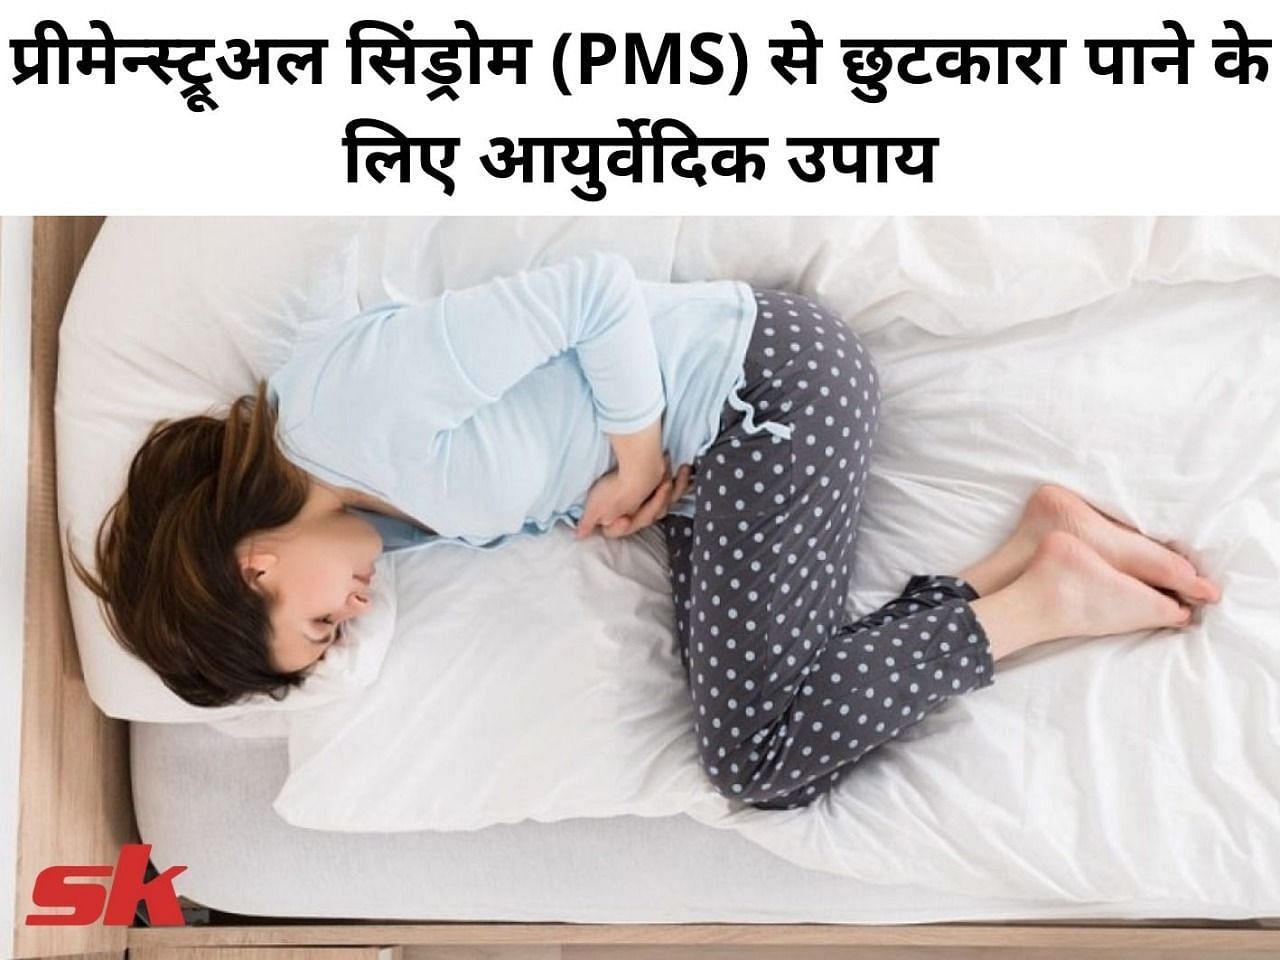 प्रीमेन्स्ट्रूअल सिंड्रोम (PMS) से छुटकारा पाने के लिए आयुर्वेदिक उपाय (फोटो - sportskeeda hindi)